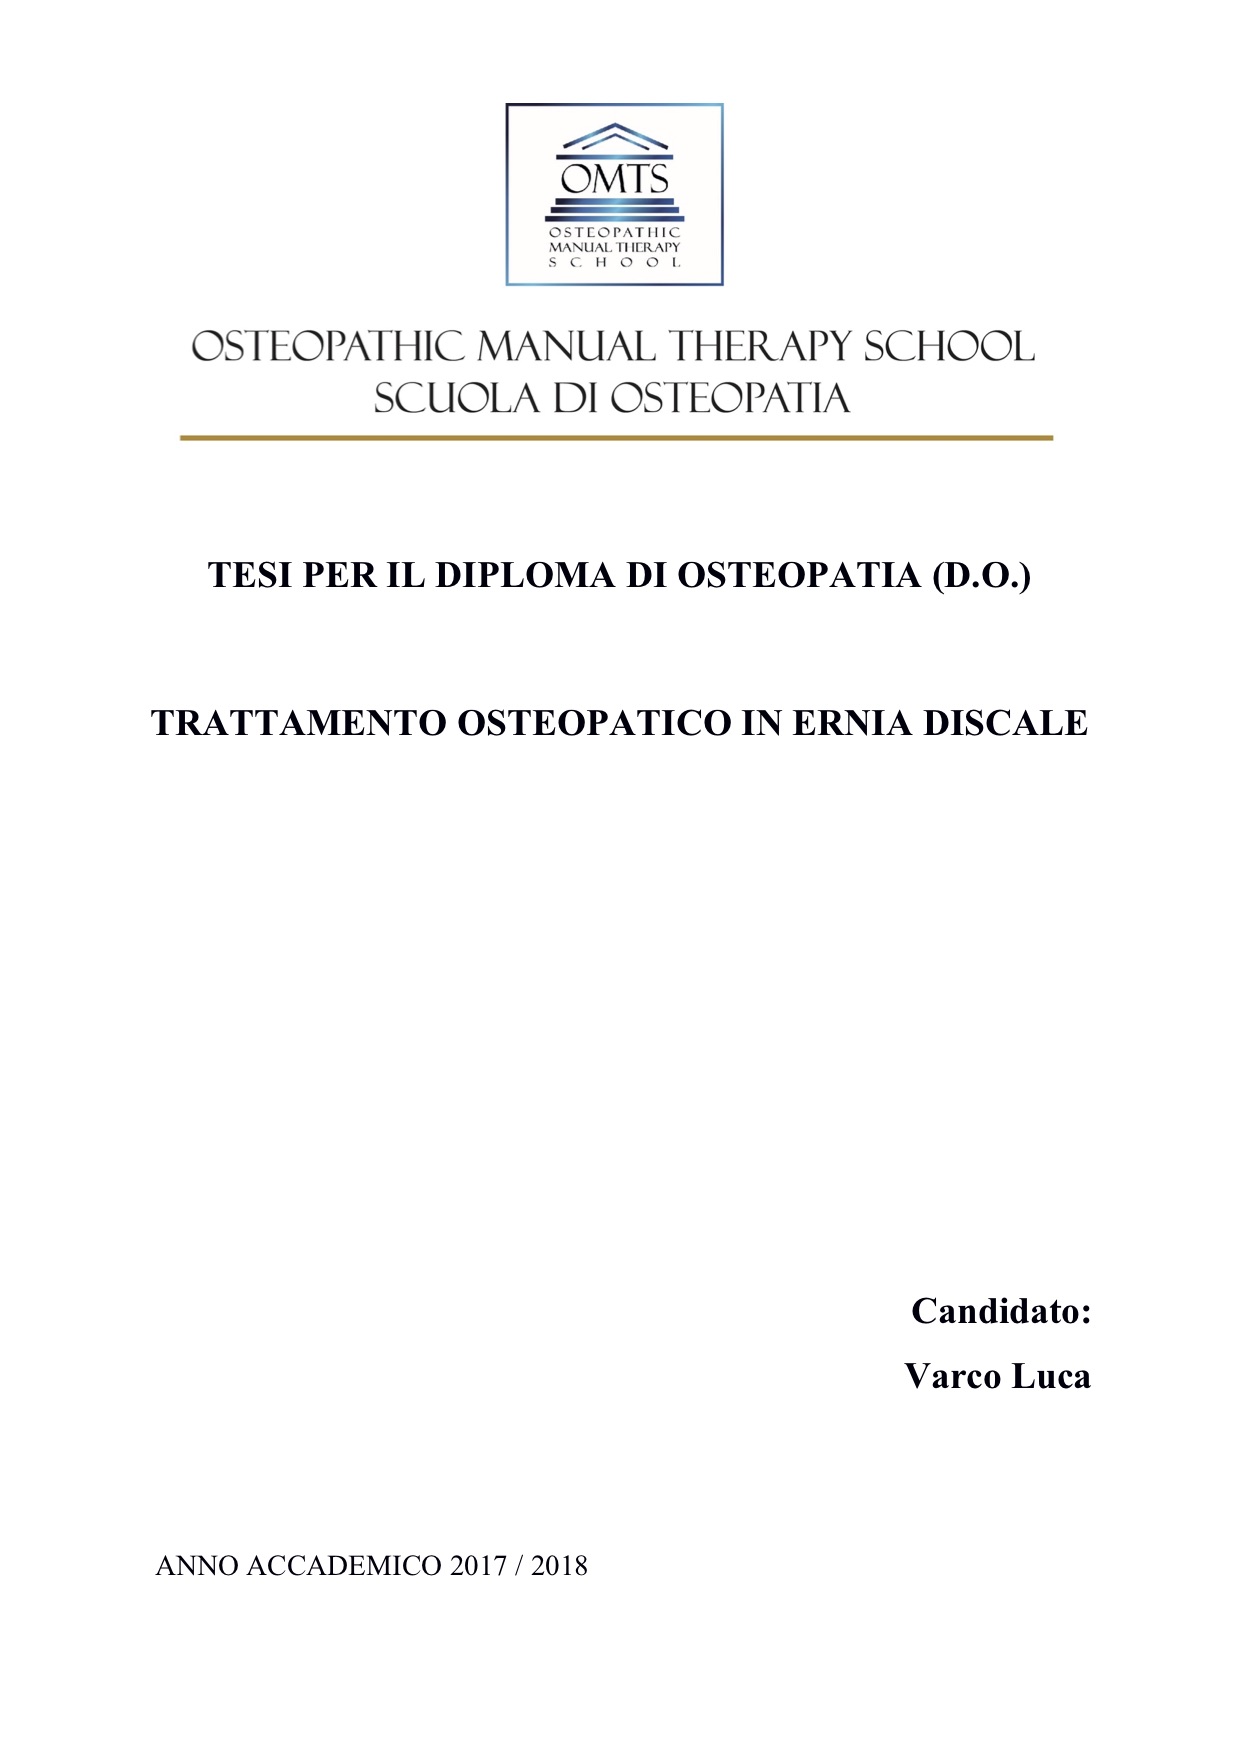 Luca Varco Tesi Diploma Osteopatia 2019